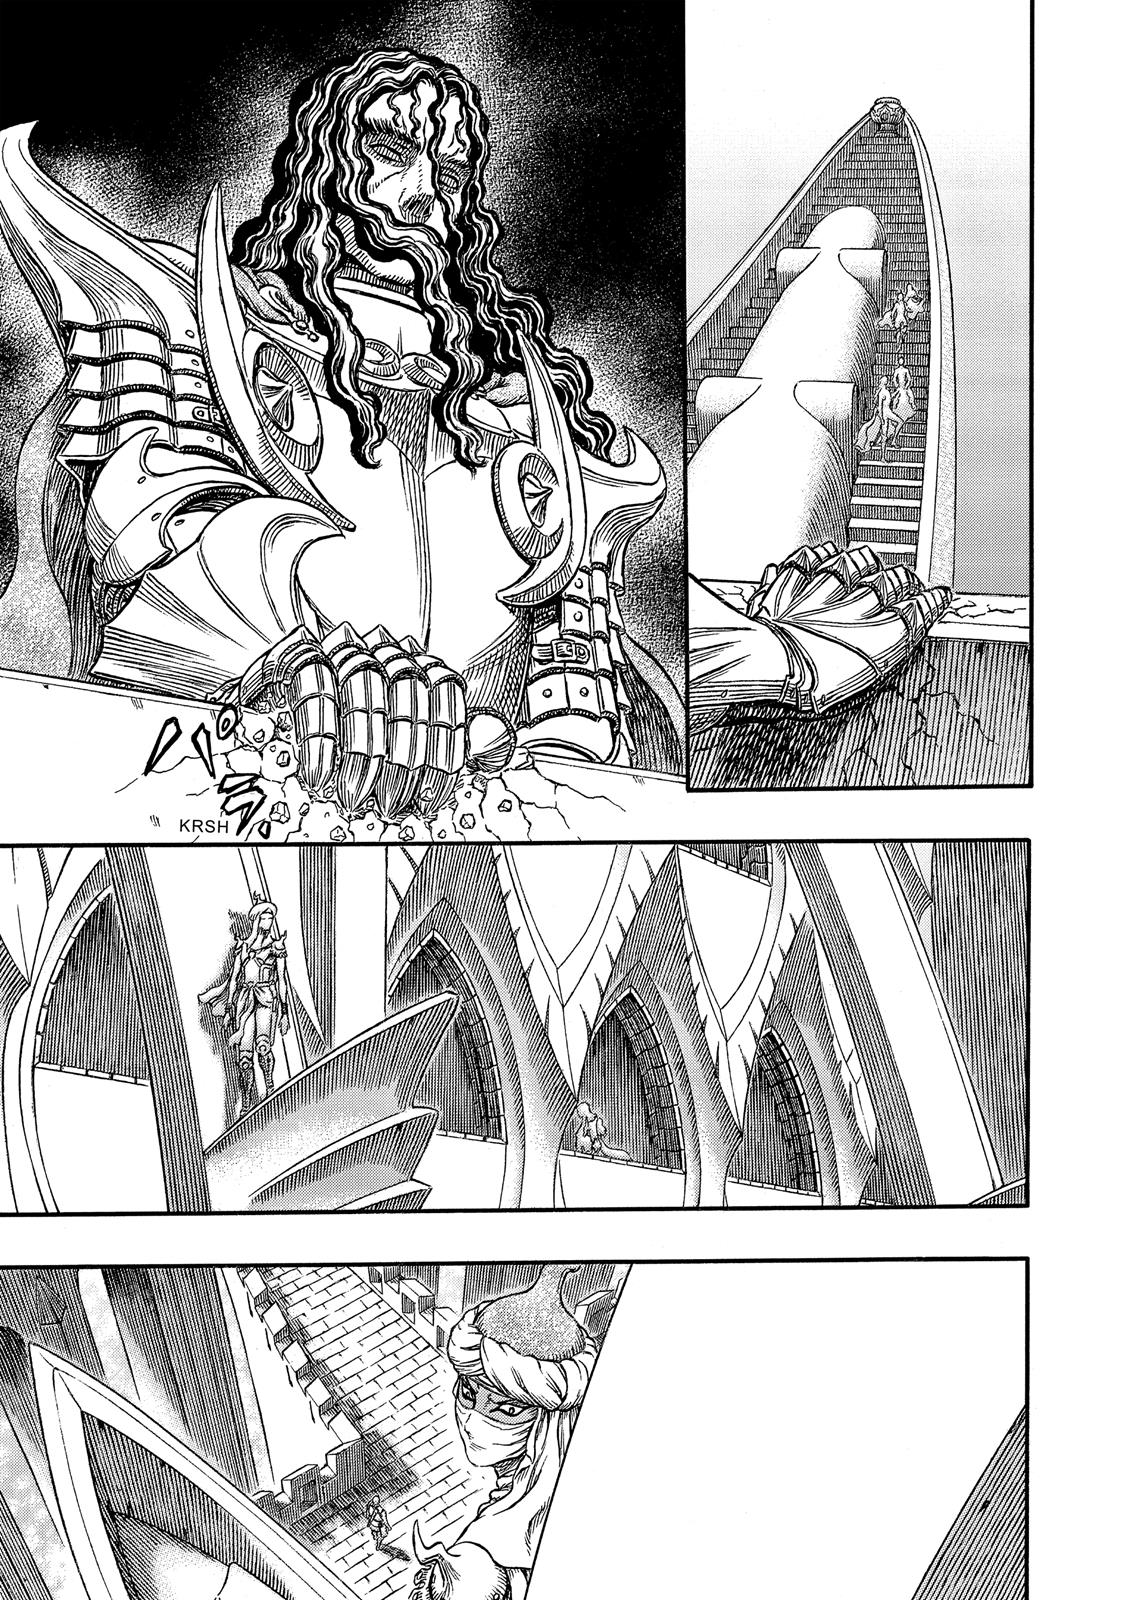 Berserk Manga Chapter 338 image 04